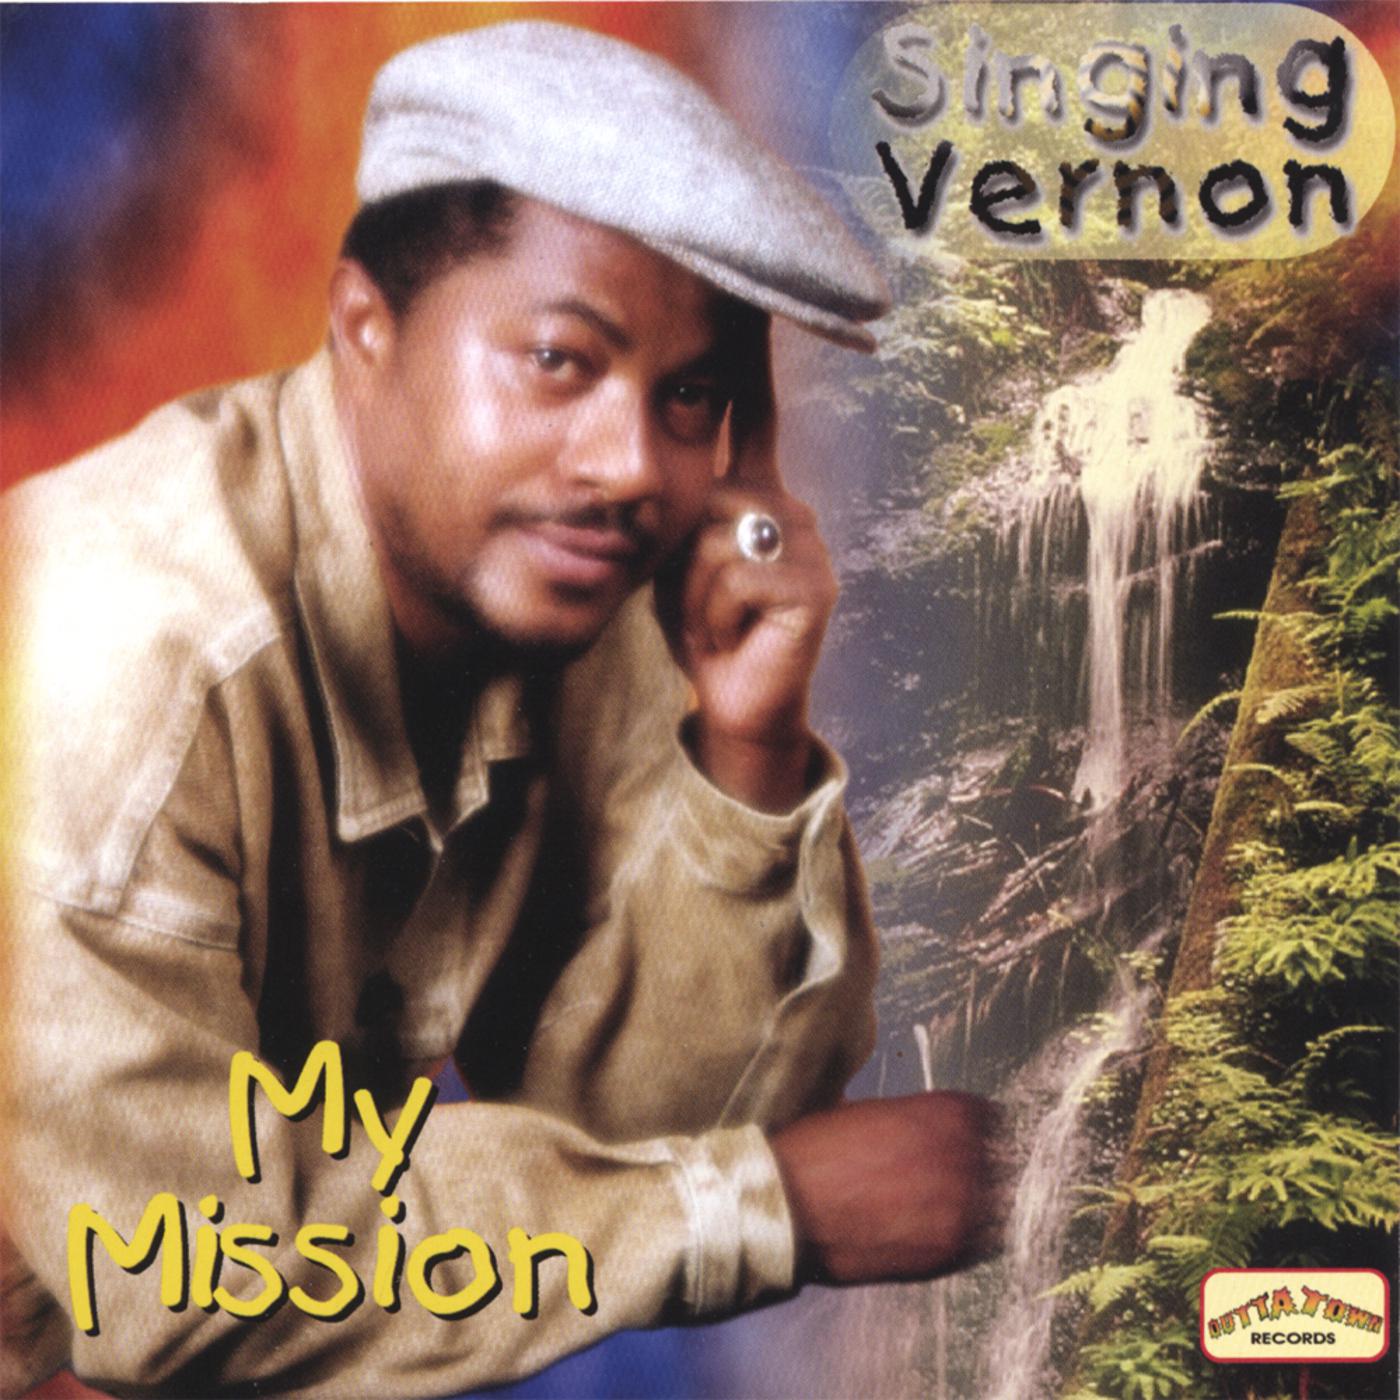 Singing Vernon - Times Hard (original)